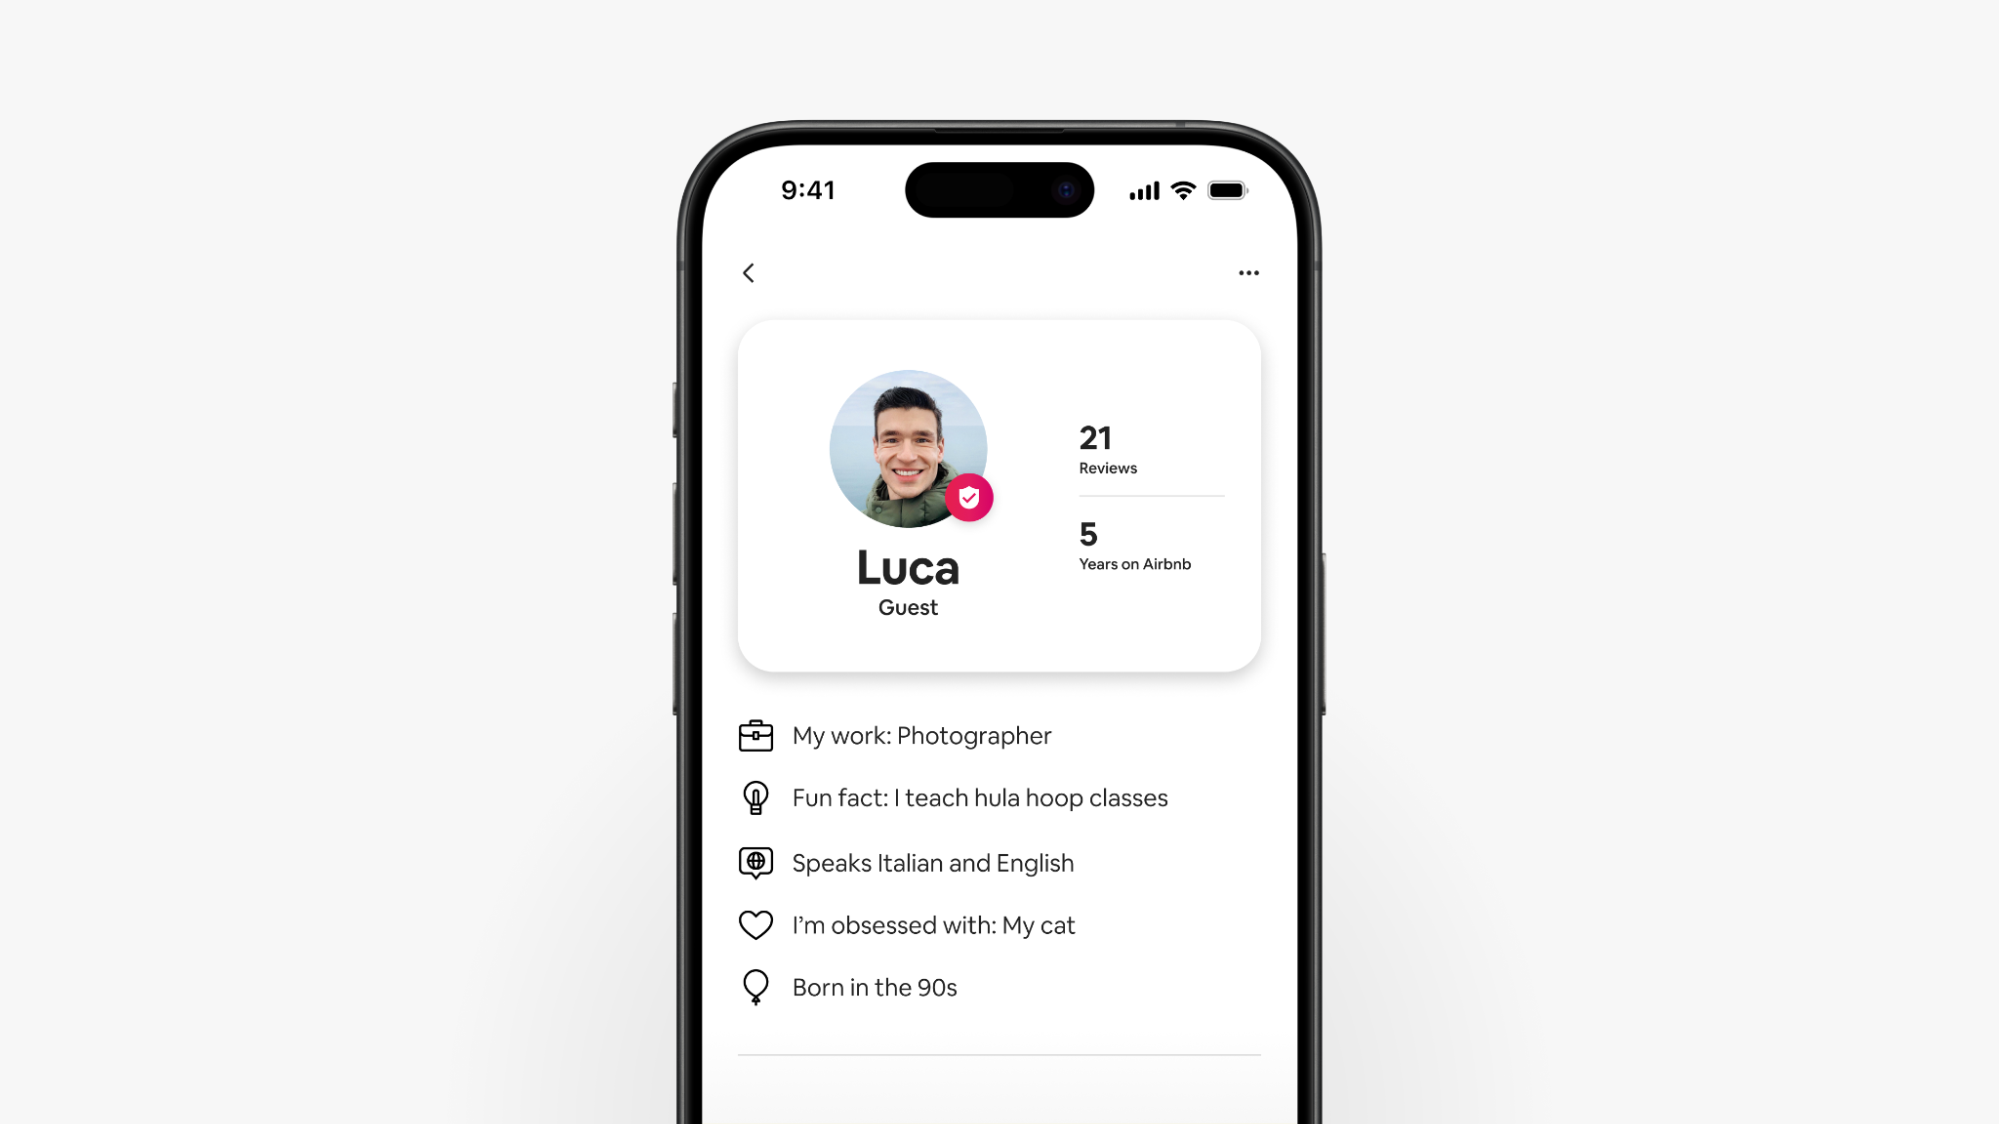 Na snímku obrazovky chytrého telefonu je vidět Lucův vylepšený profil hosta na Airbnb, který zobrazuje hodnocení a podrobnosti o hostu.